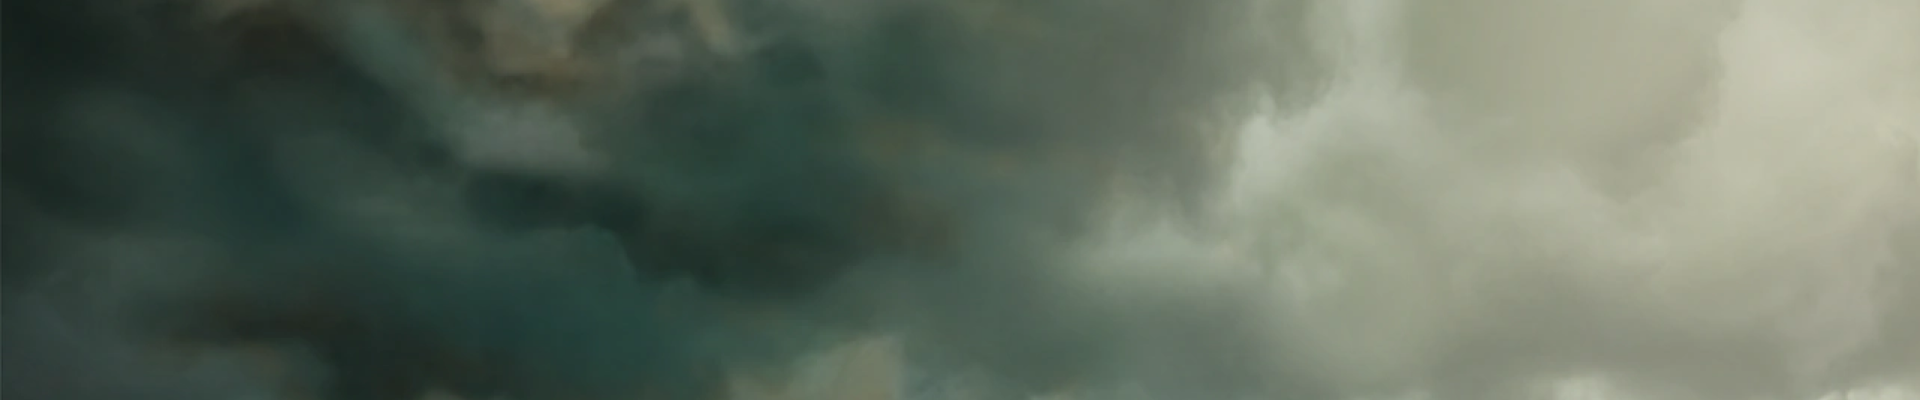 S.T.A.L.K.E.R. 2 recebe trailer in-engine mostrando mais do mundo  apocalíptico do jogo